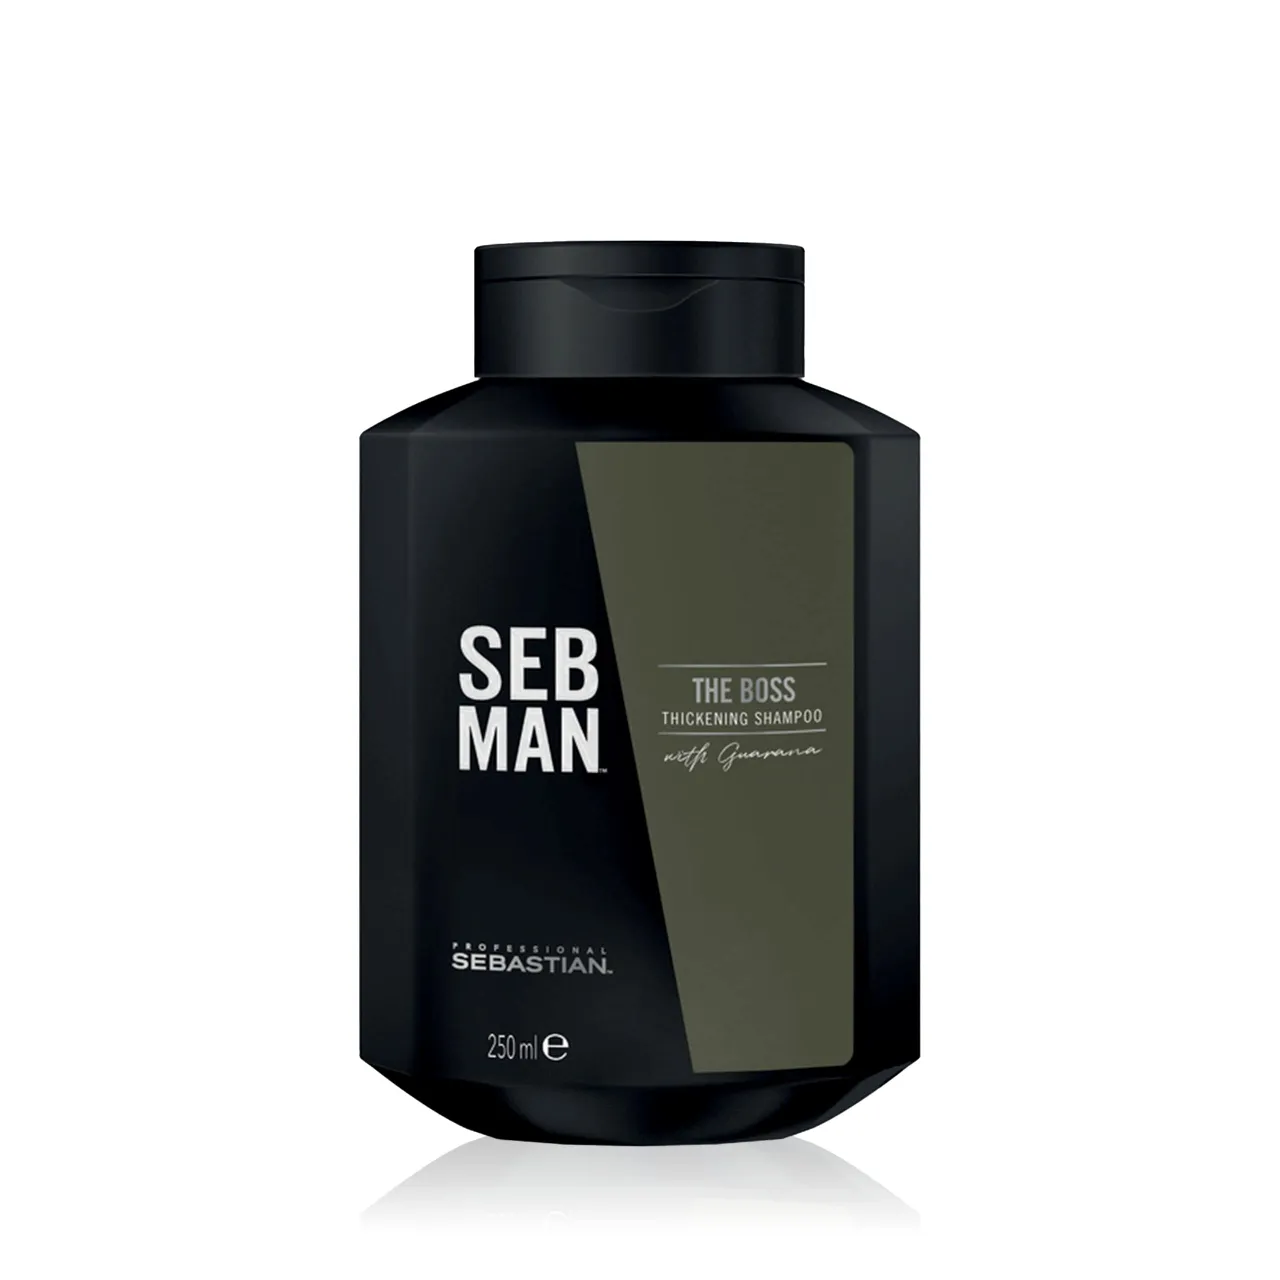 SEB MAN THE BOSS – verdichtendes Volumenshampoo für mehr